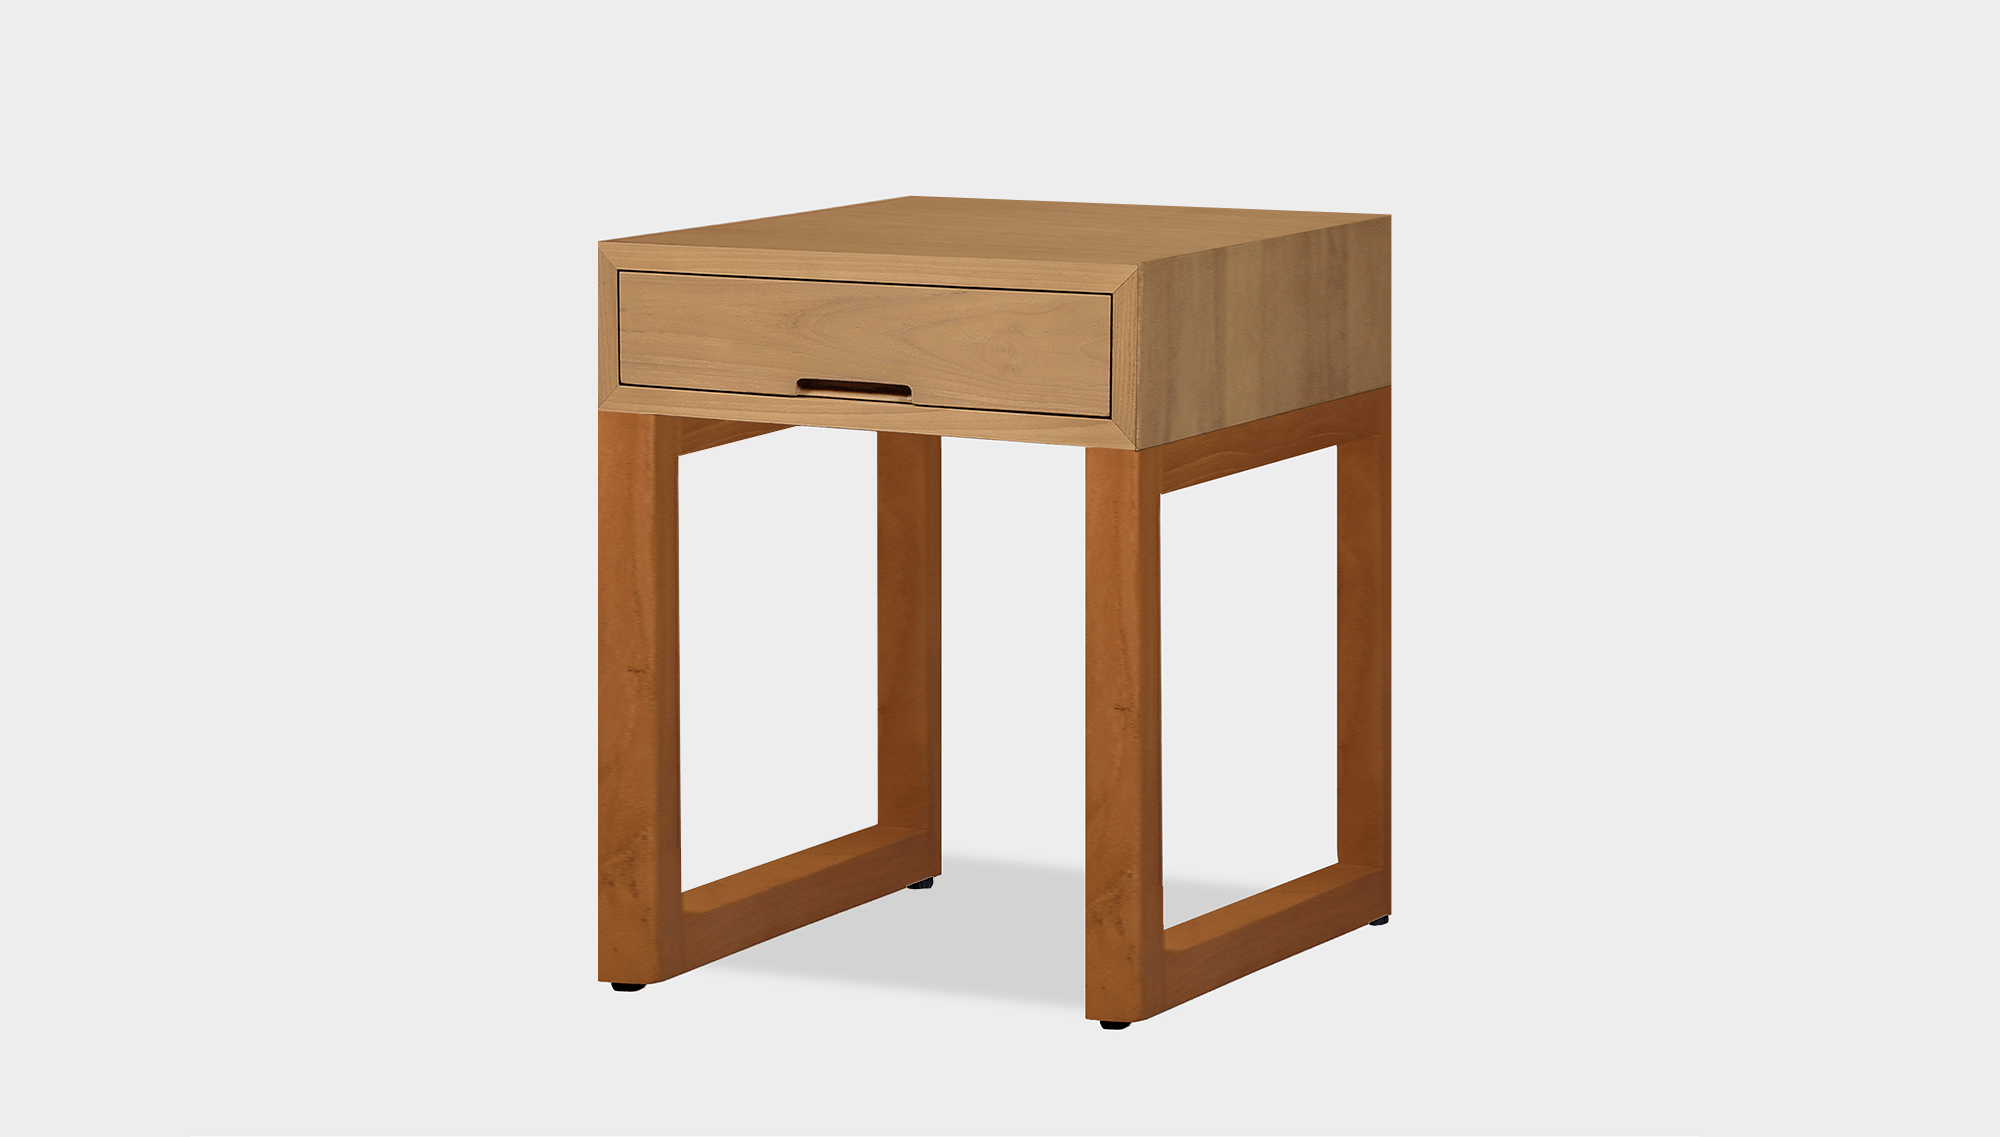 reddie-raw bedside table 45W x 45D x 55H *cm / Wood Teak~Oak / Wood Teak~Natural Suzy Bedside Table High Square